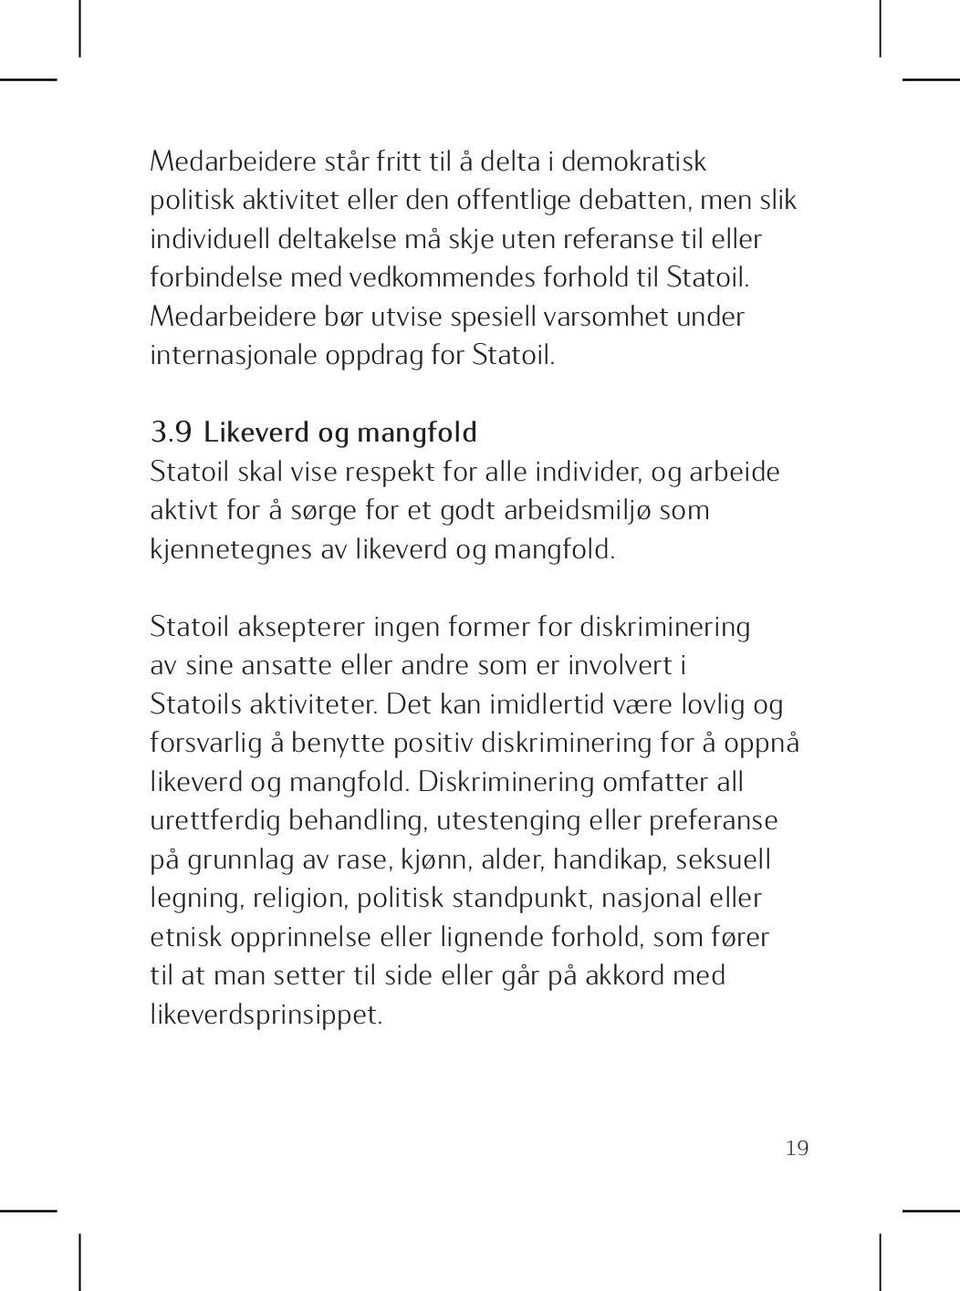 9 Likeverd og mangfold Statoil skal vise respekt for alle individer, og arbeide aktivt for å sørge for et godt arbeidsmiljø som kjennetegnes av likeverd og mangfold.